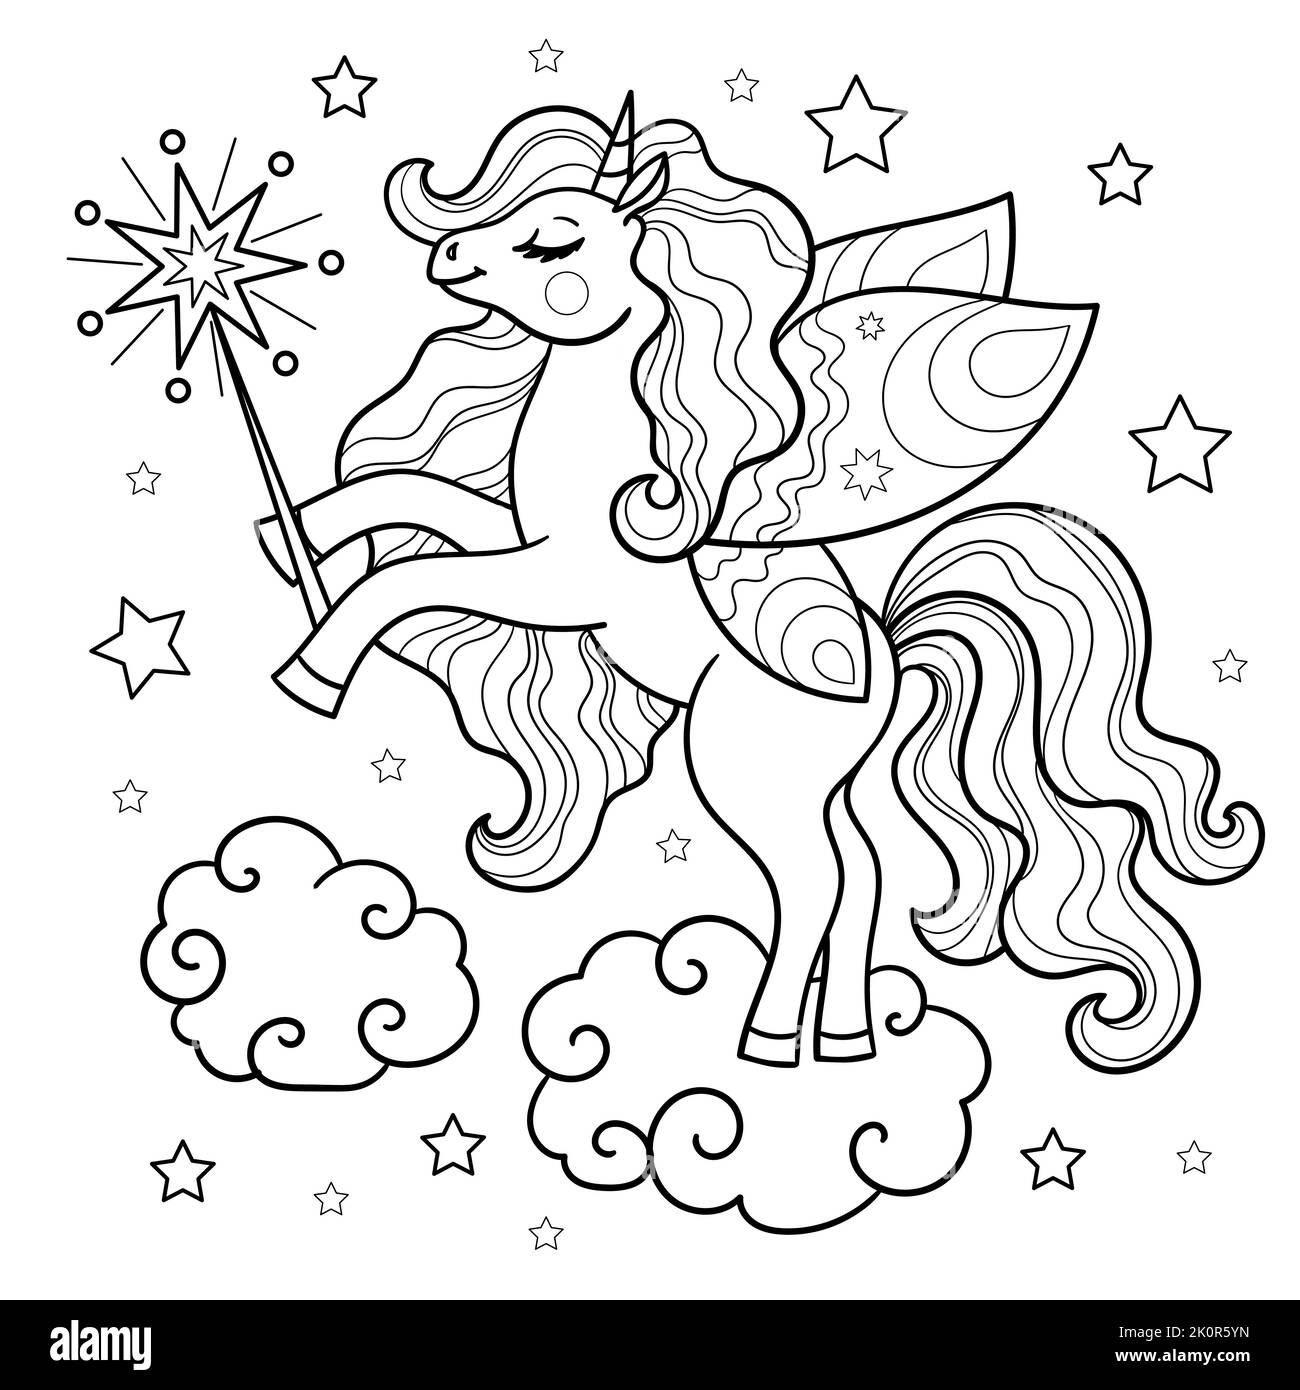 mignonne unicorn avec une baguette magique sur un nuage. Dessin linéaire noir et blanc. Pour la conception des imprimés cadres de peinture livres, affiches, autocollants, cartes, t-shi Illustration de Vecteur